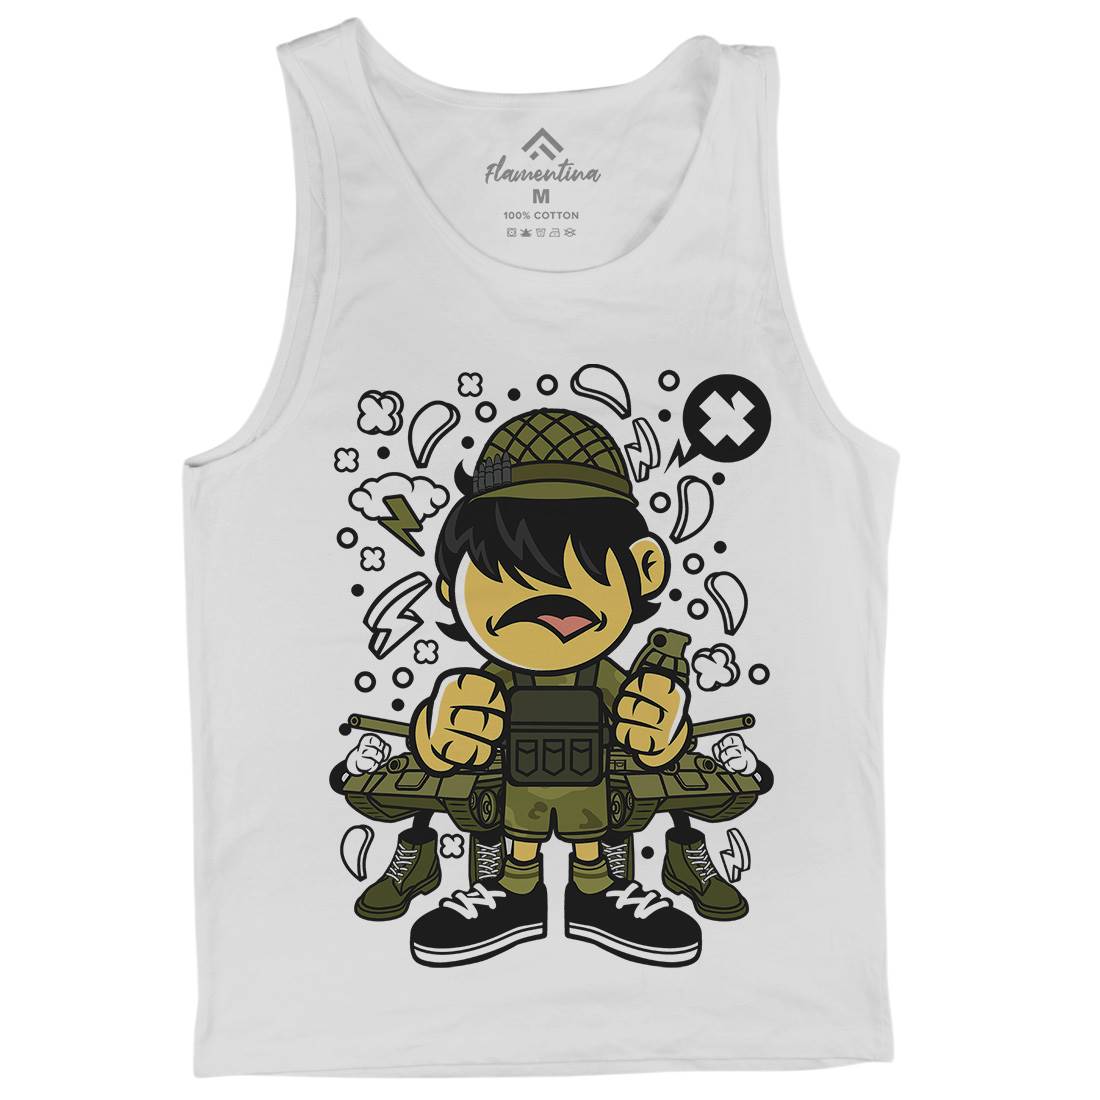 Soldier Kid Mens Tank Top Vest Army C253